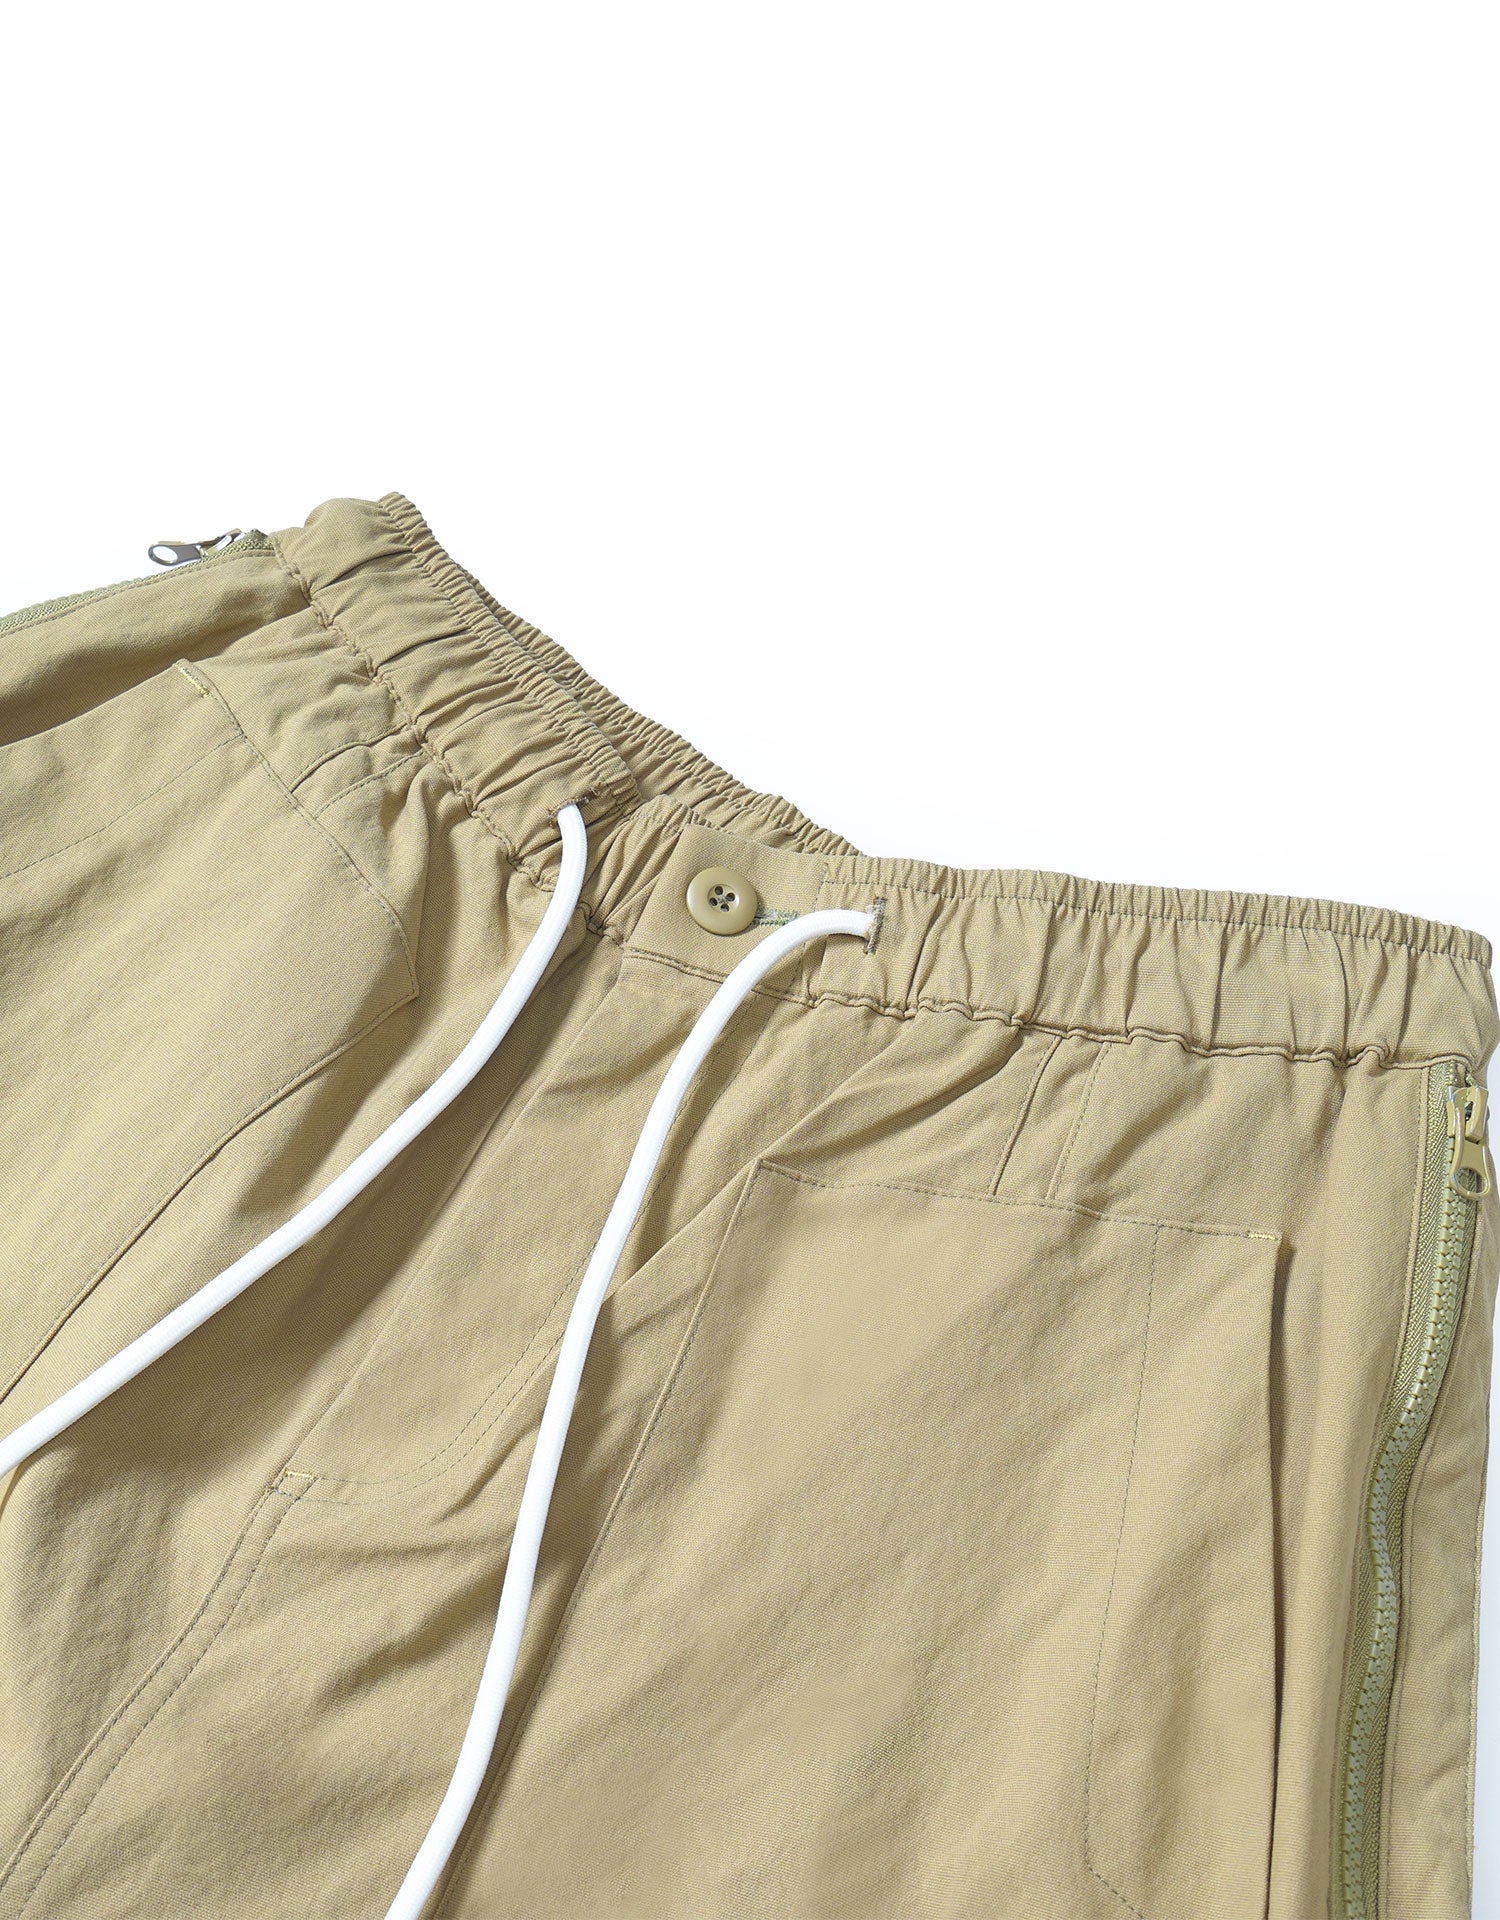 TopBasics Side Zip-Up Cargo Shorts